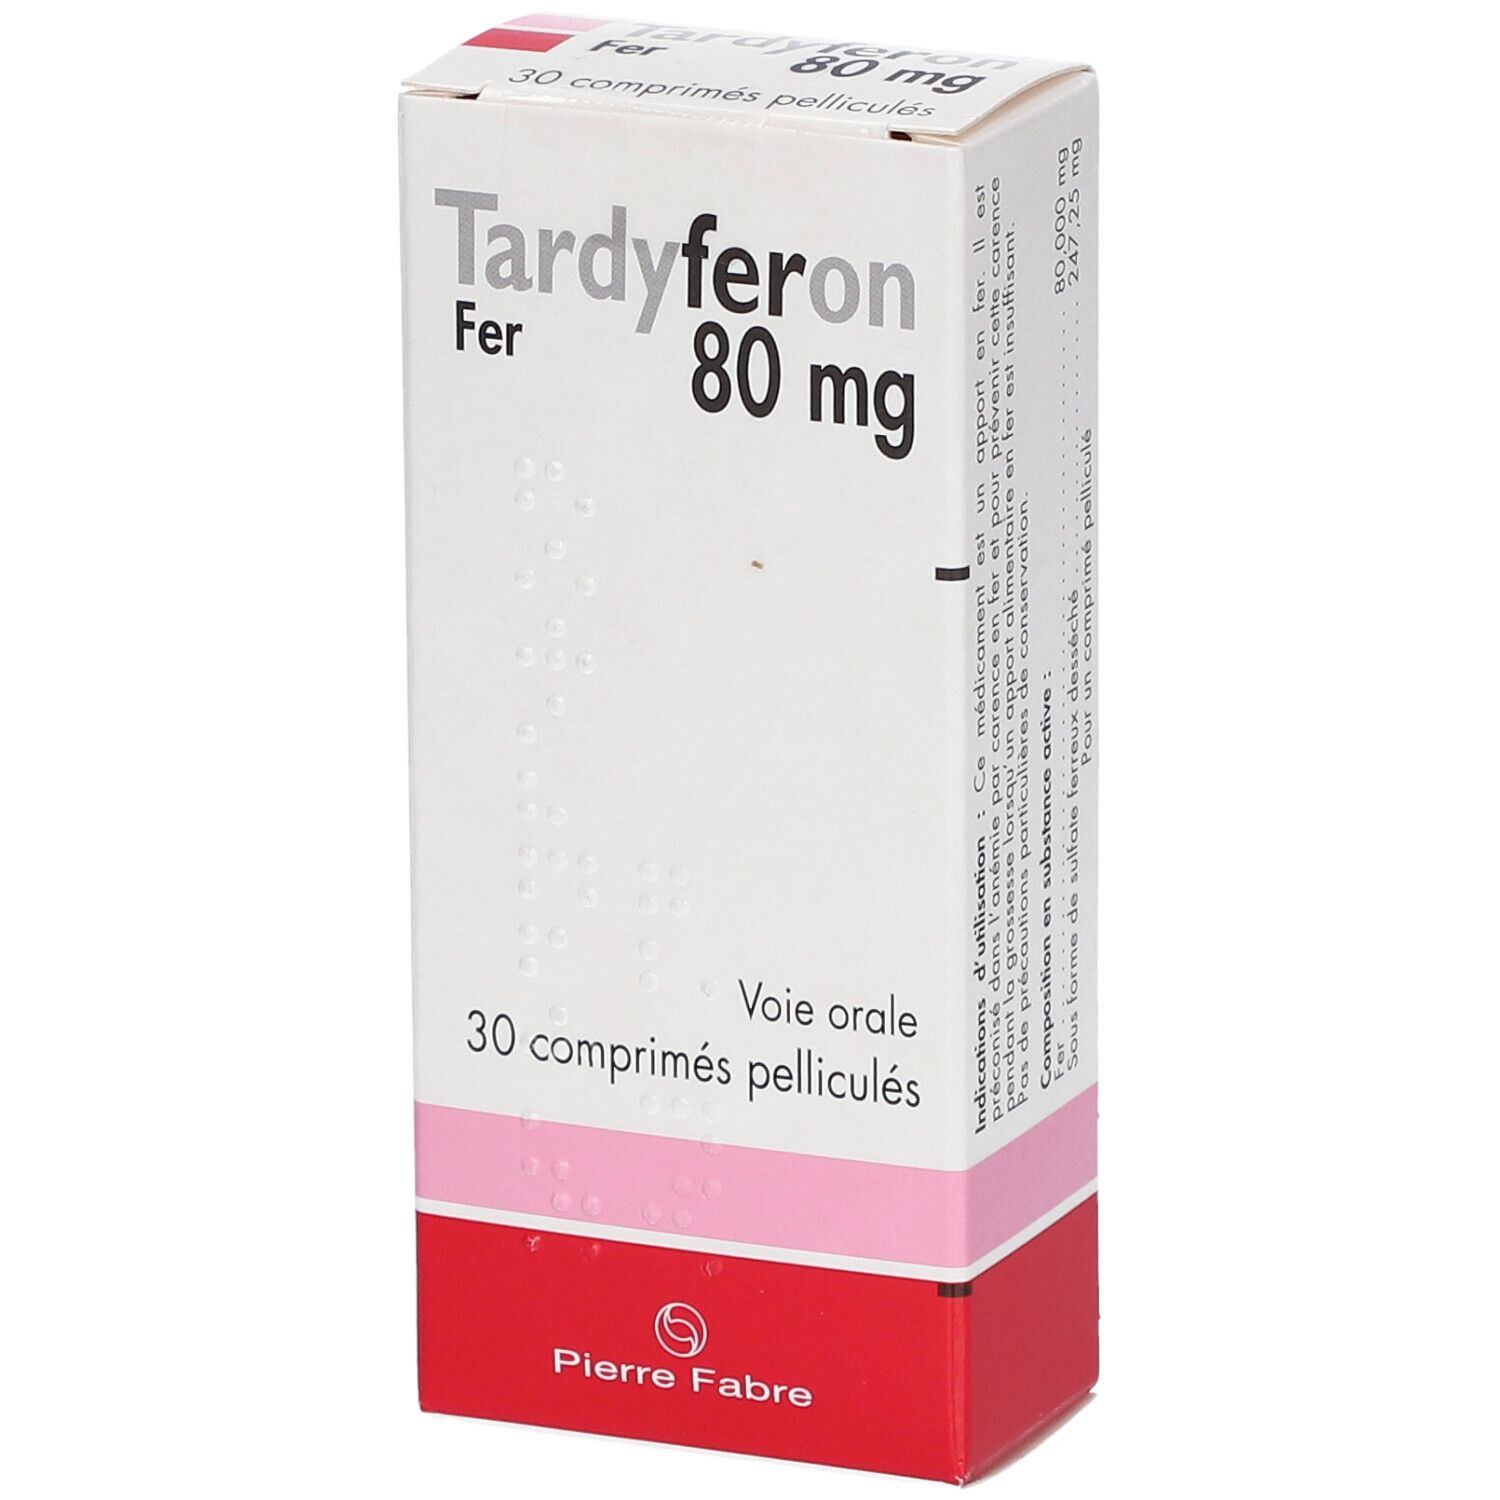 Pierre Fabre Tardyferon 80 mg